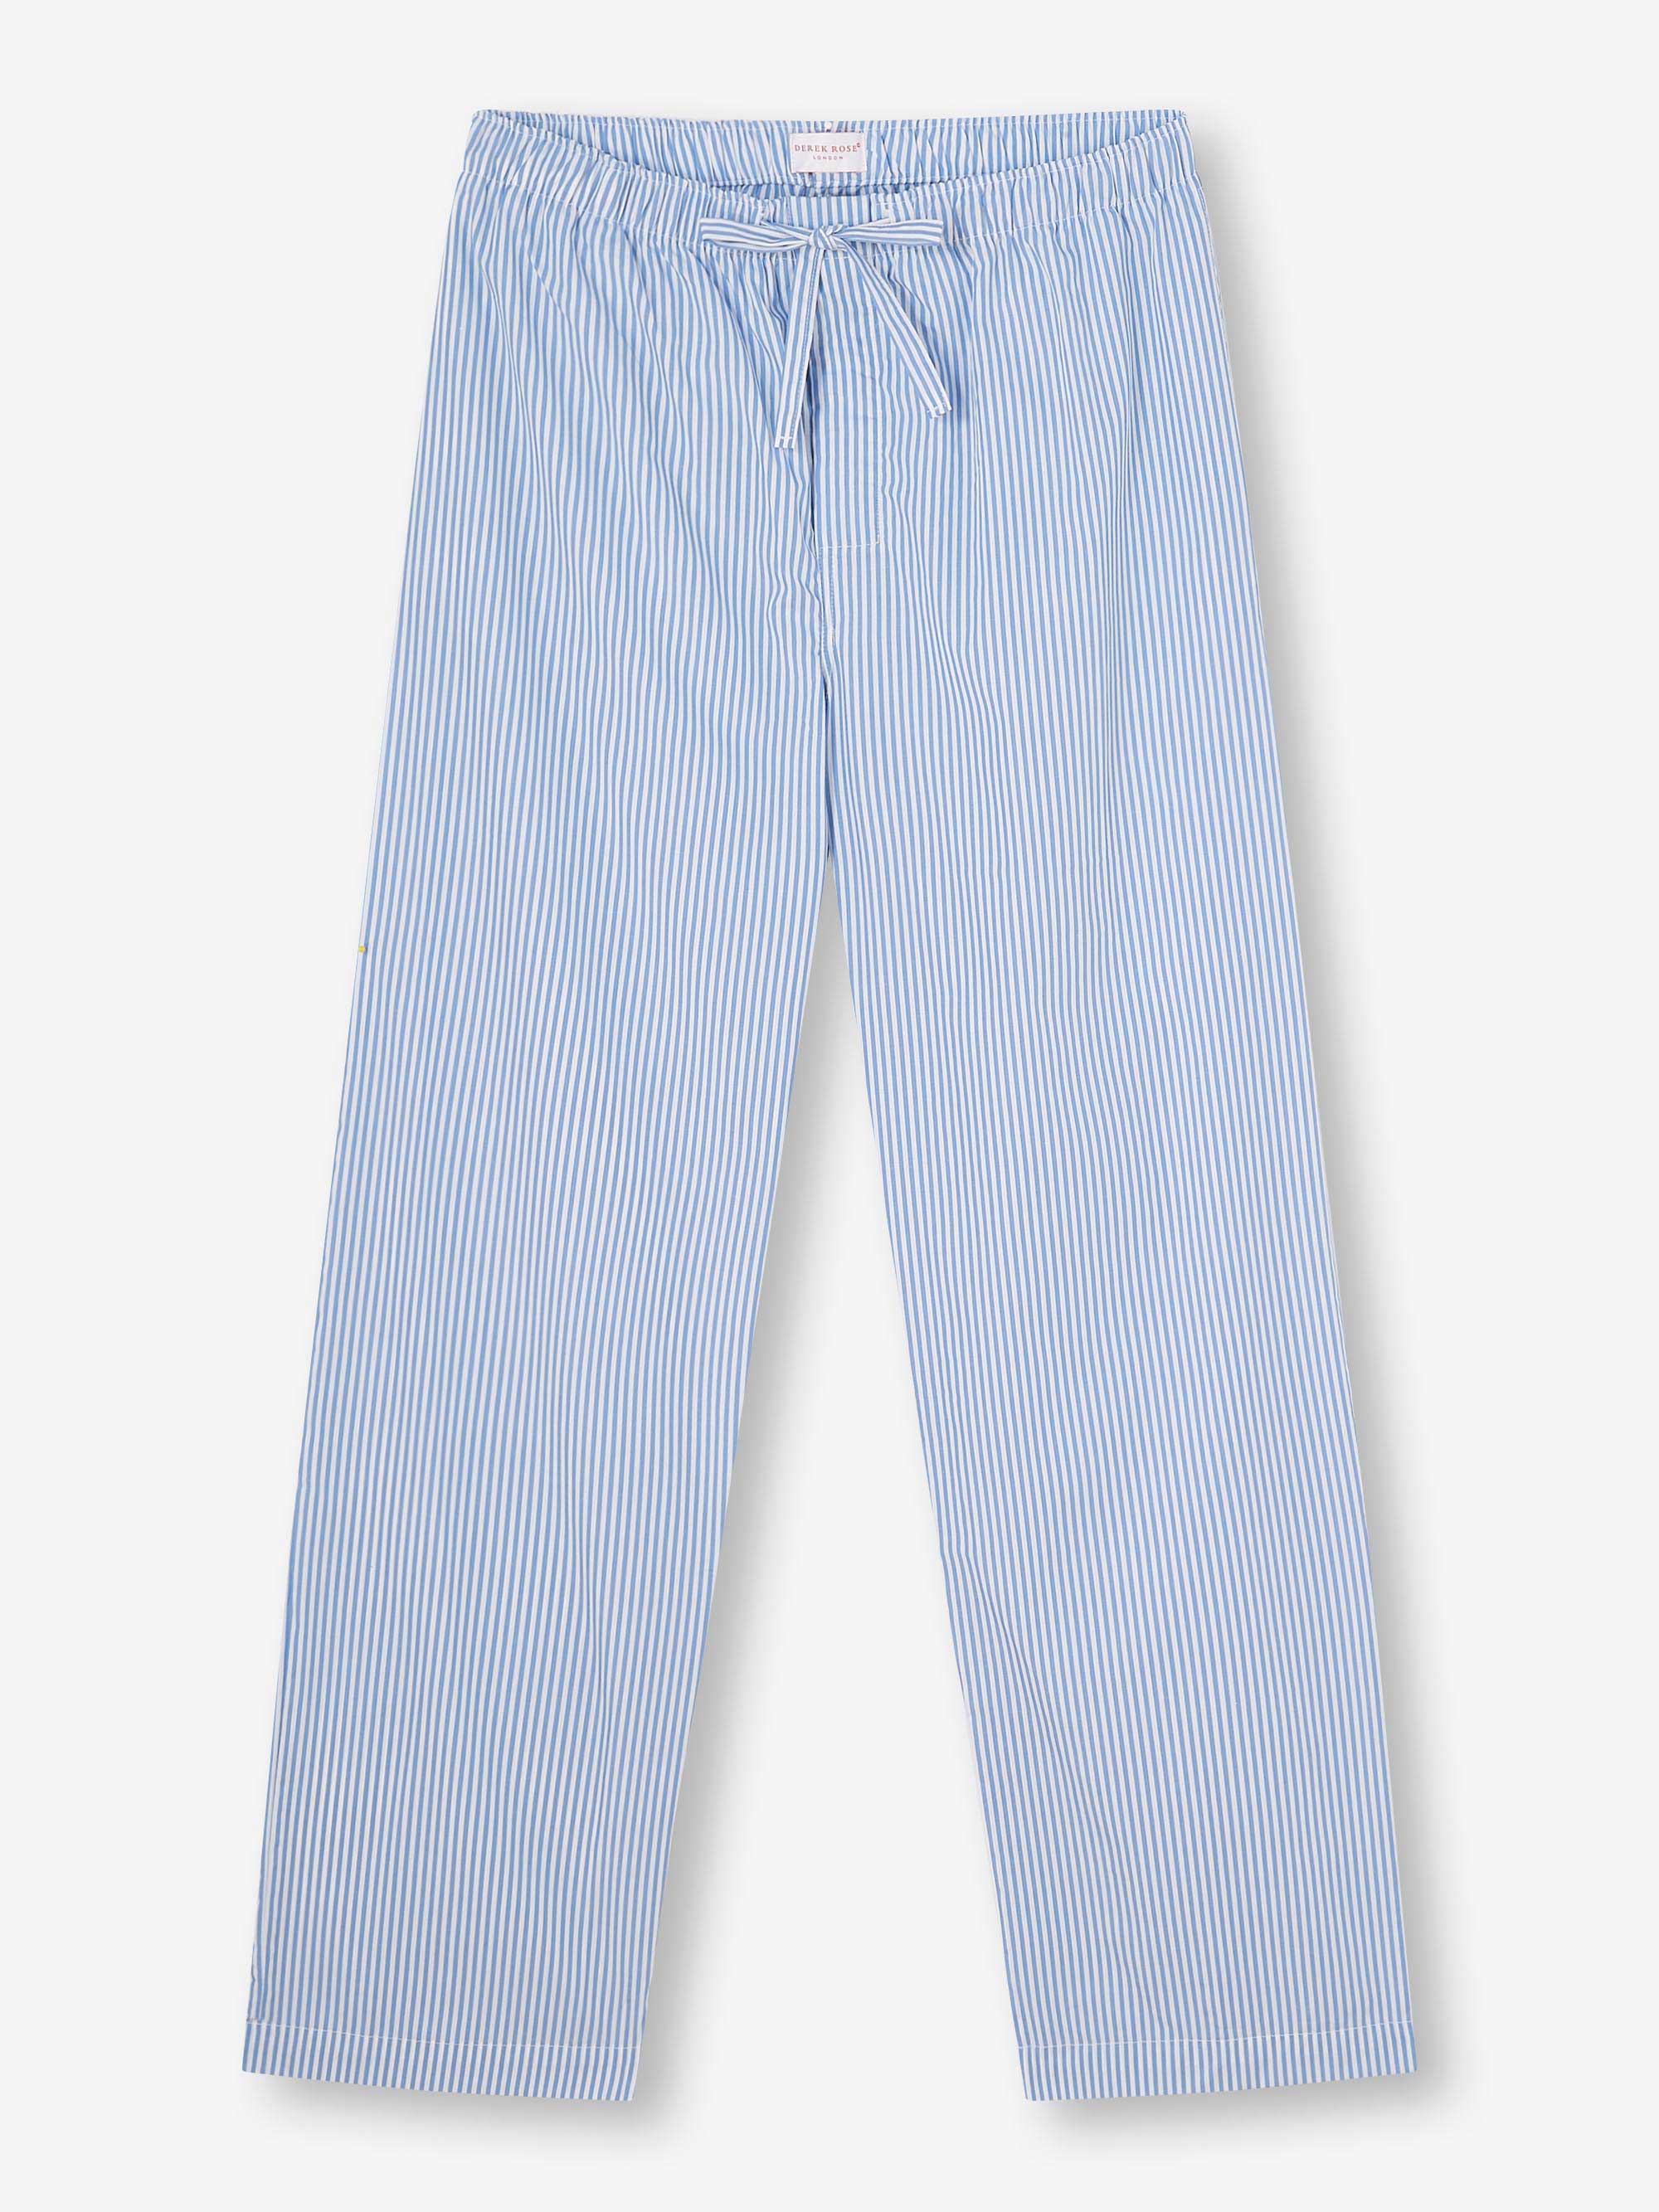 Men's Lounge Trousers James Cotton Blue